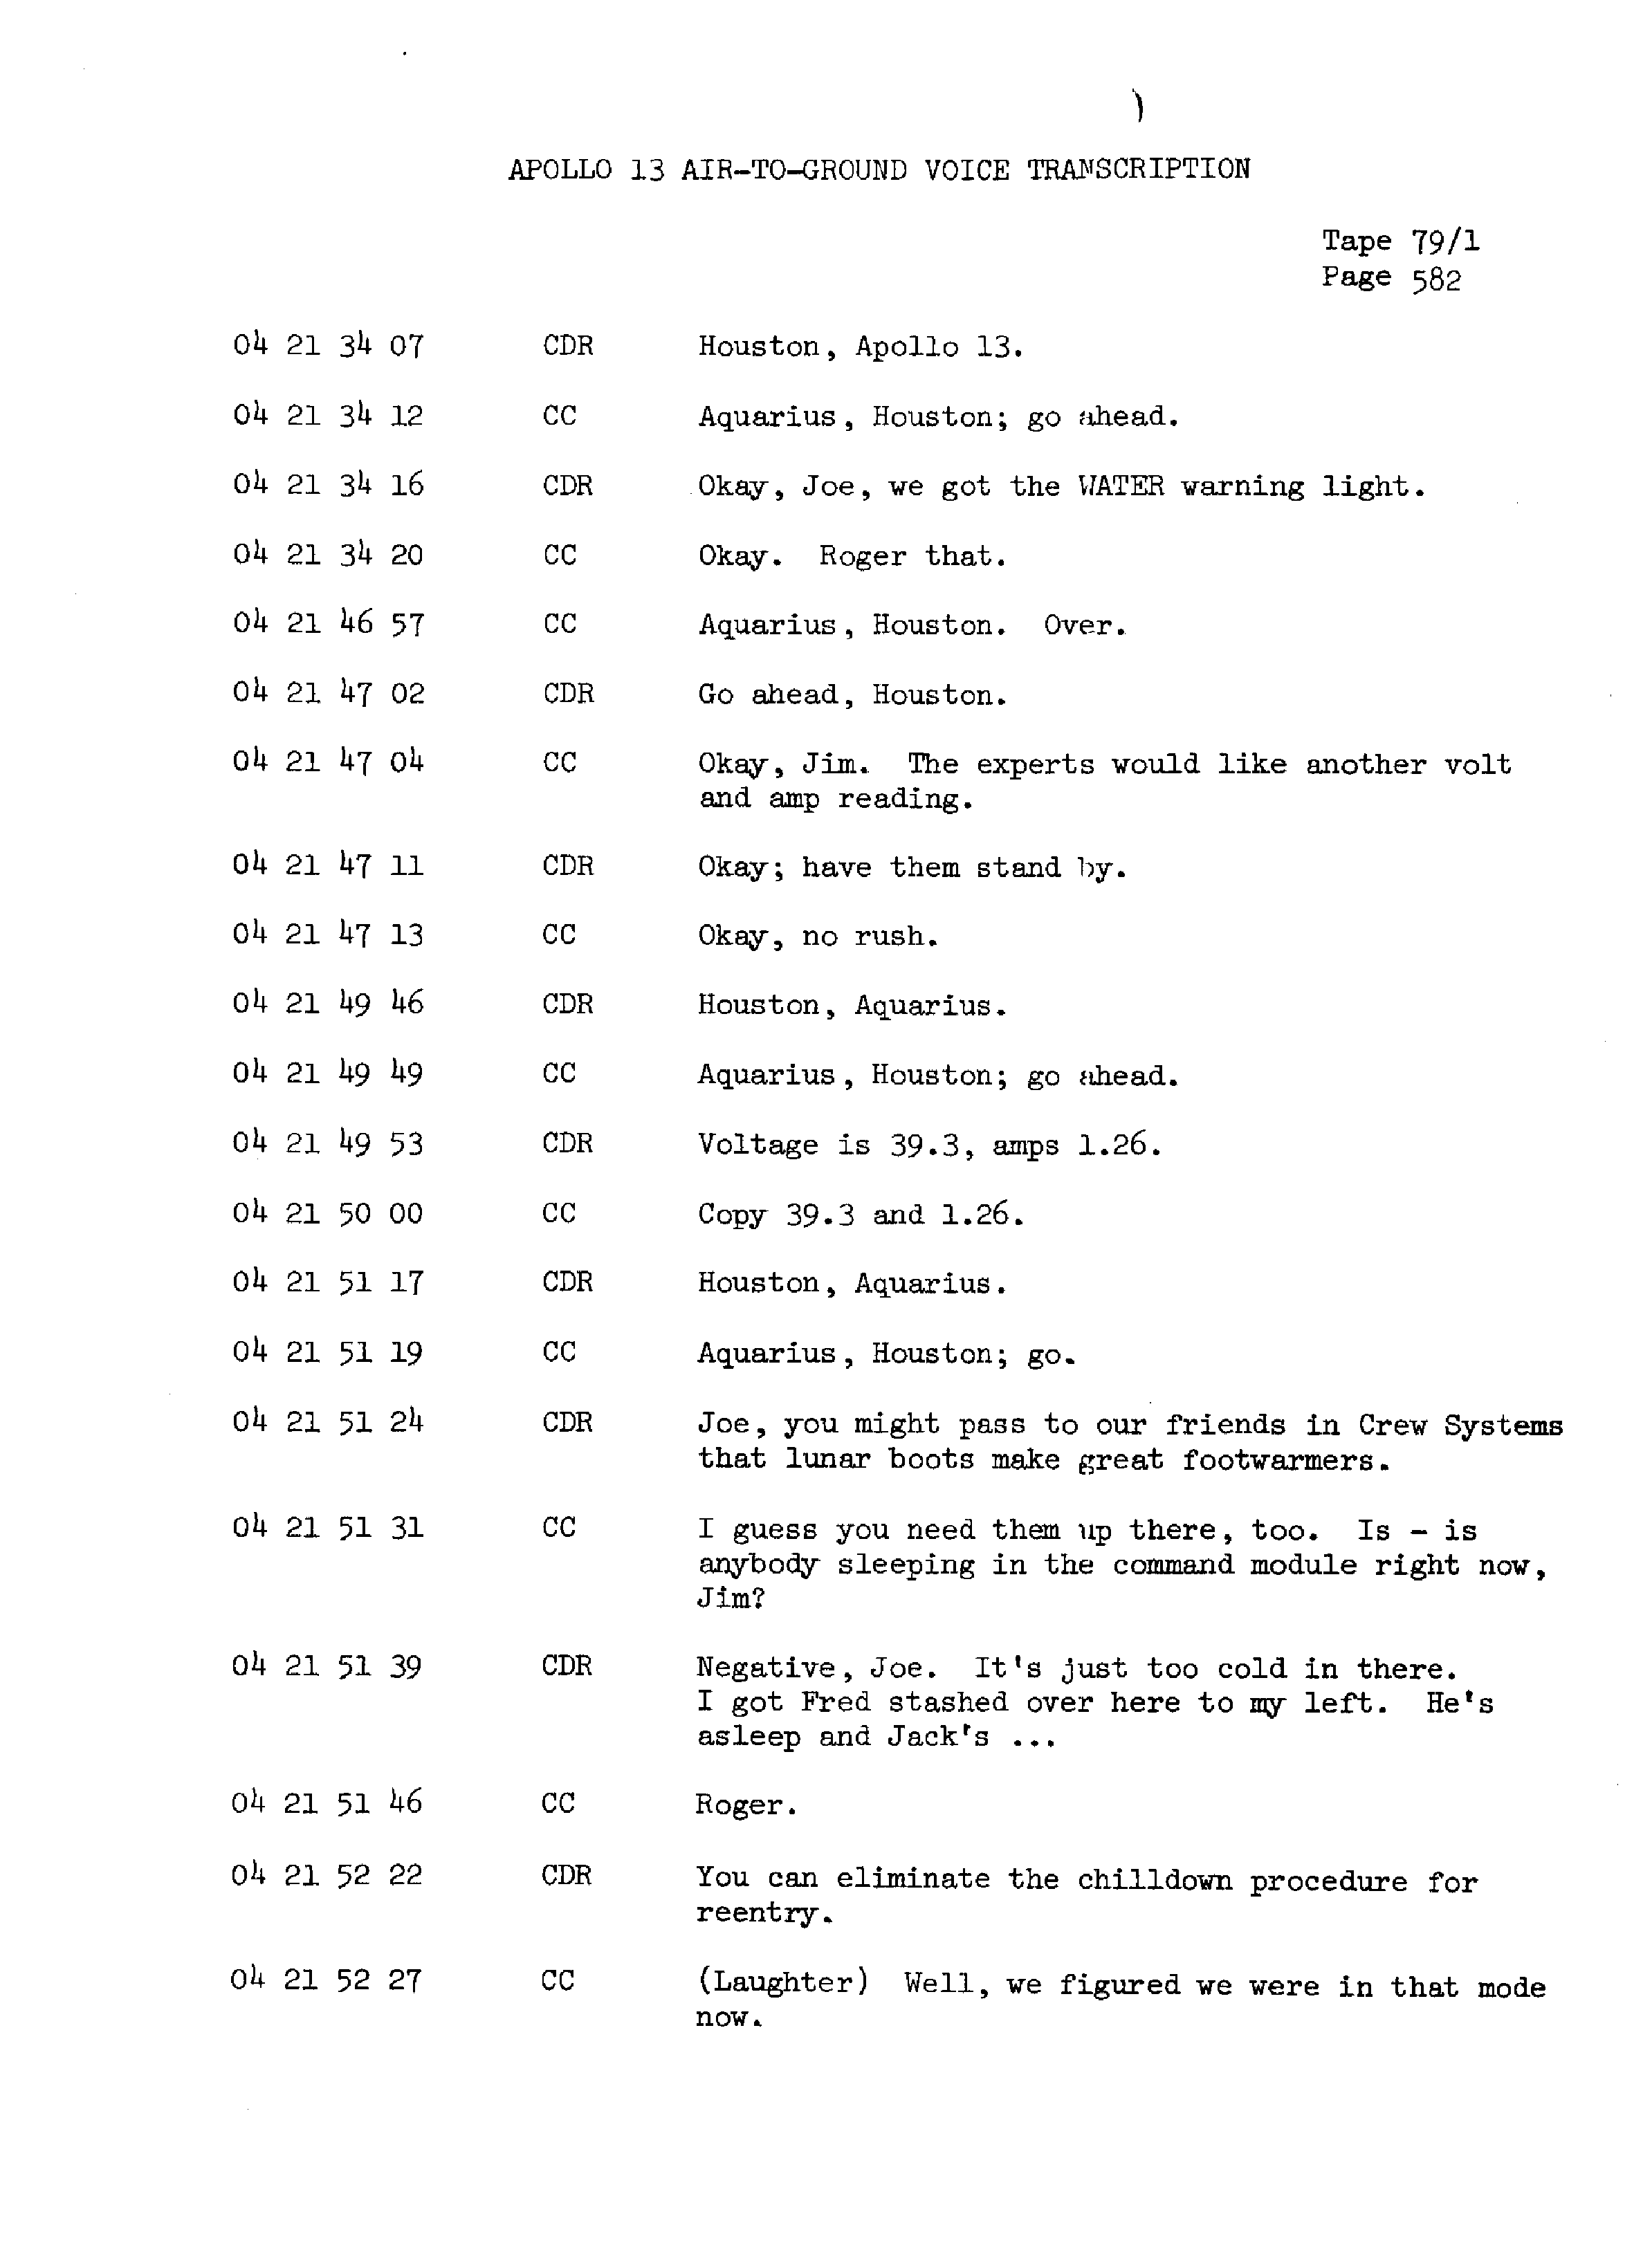 Page 589 of Apollo 13’s original transcript